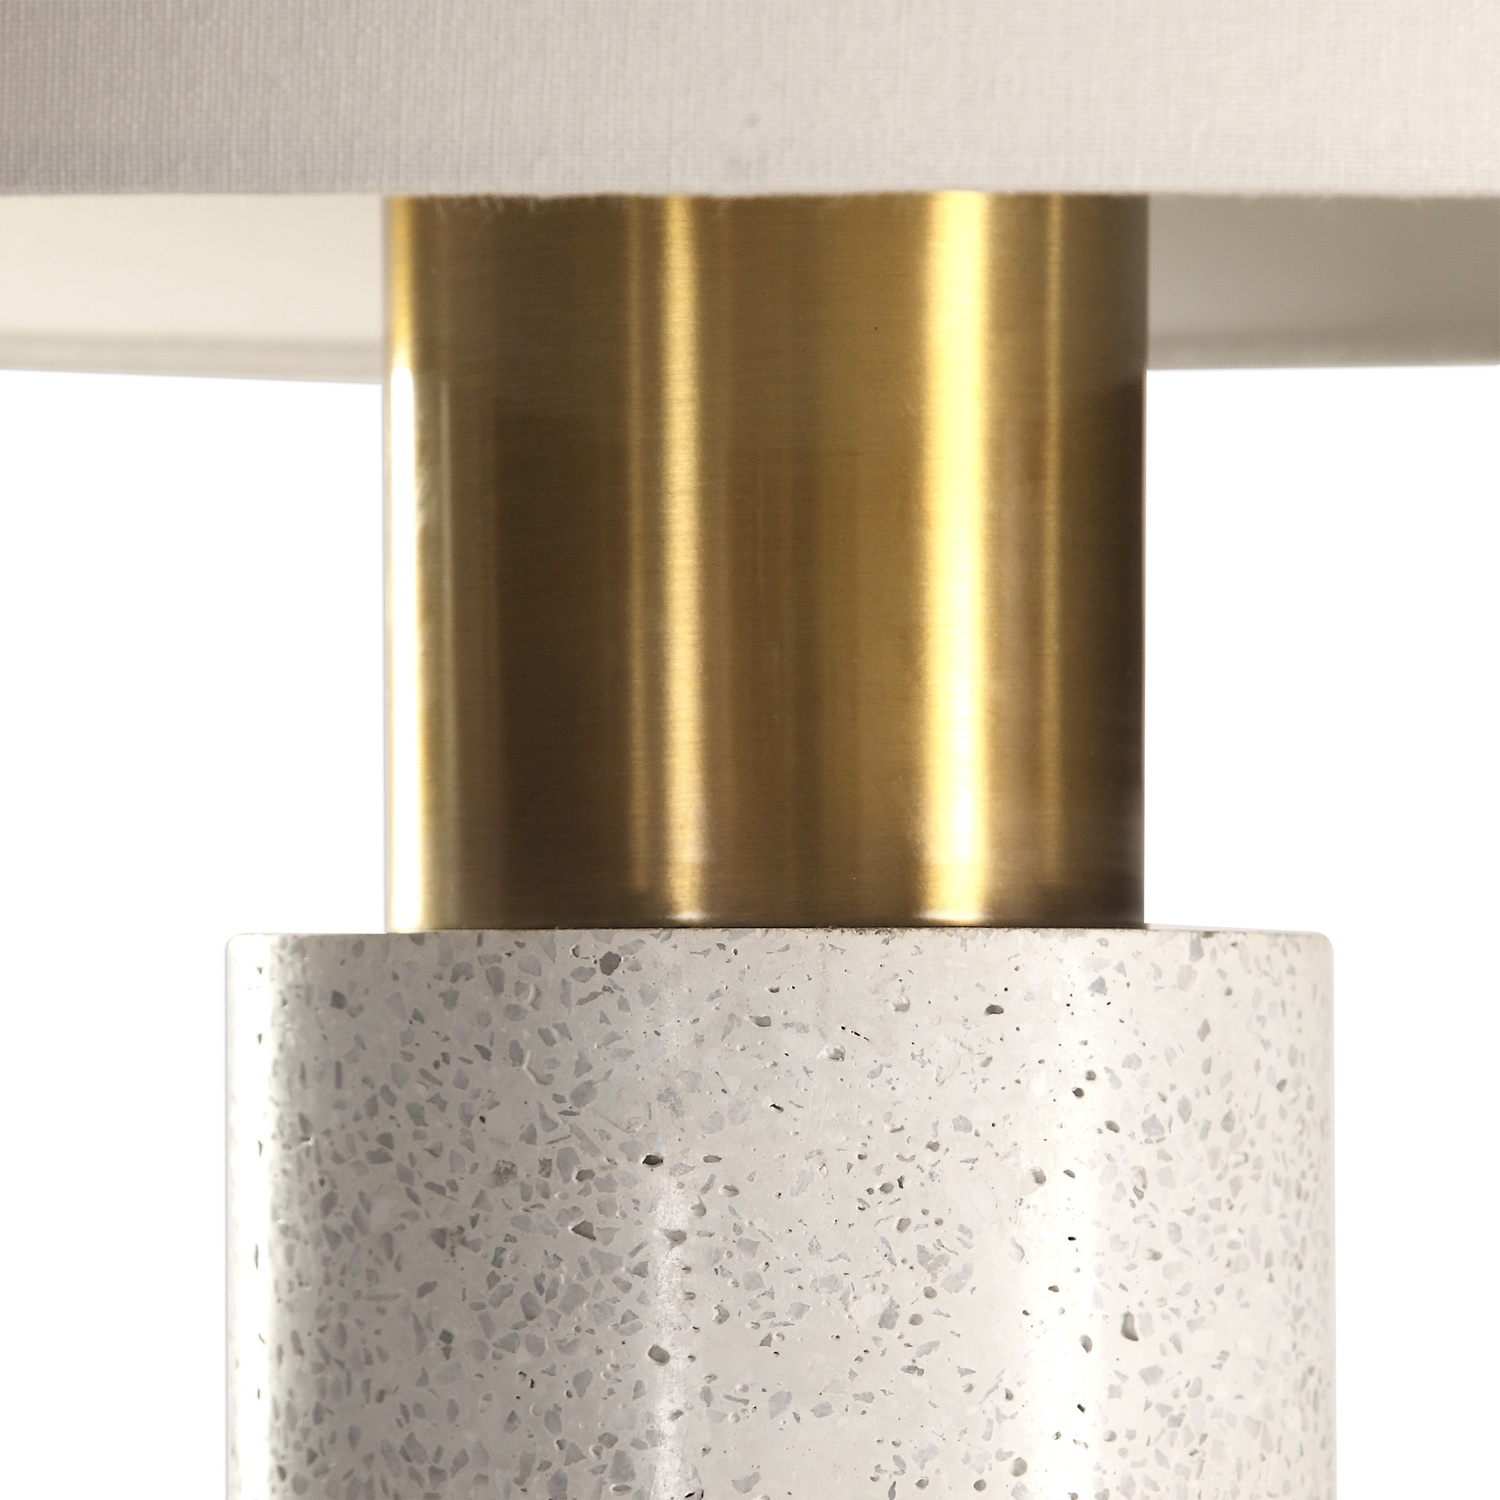 Vaeshon-Concrete Table Lamp